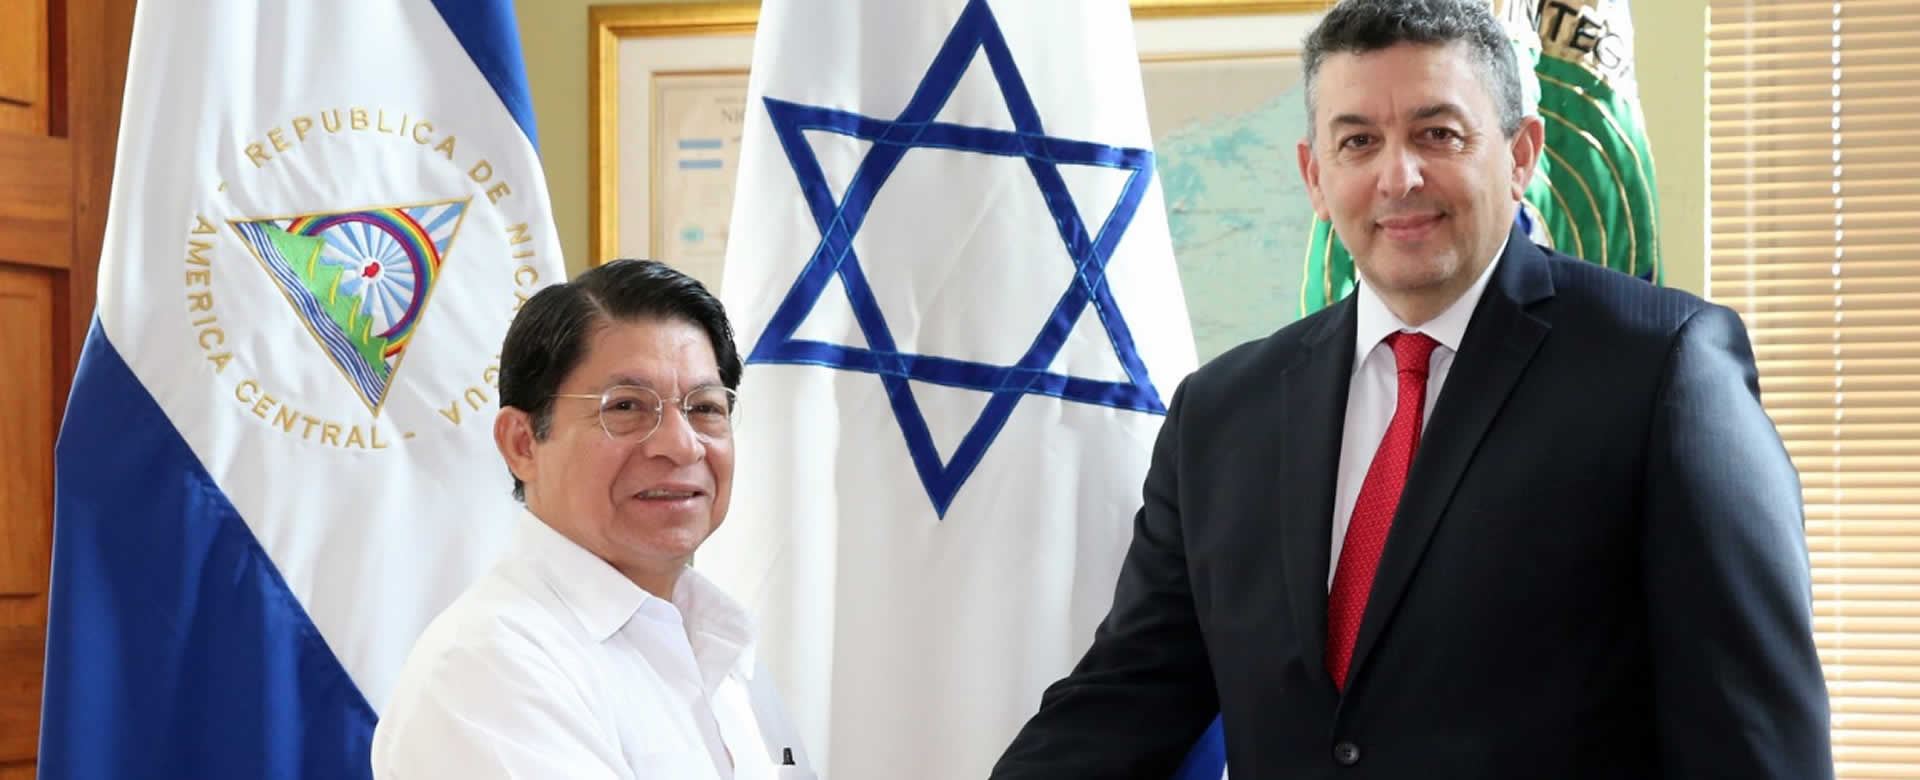 Embajadores de Israel y Pakistán presentan copias de estilo al Canciller de Nicaragua